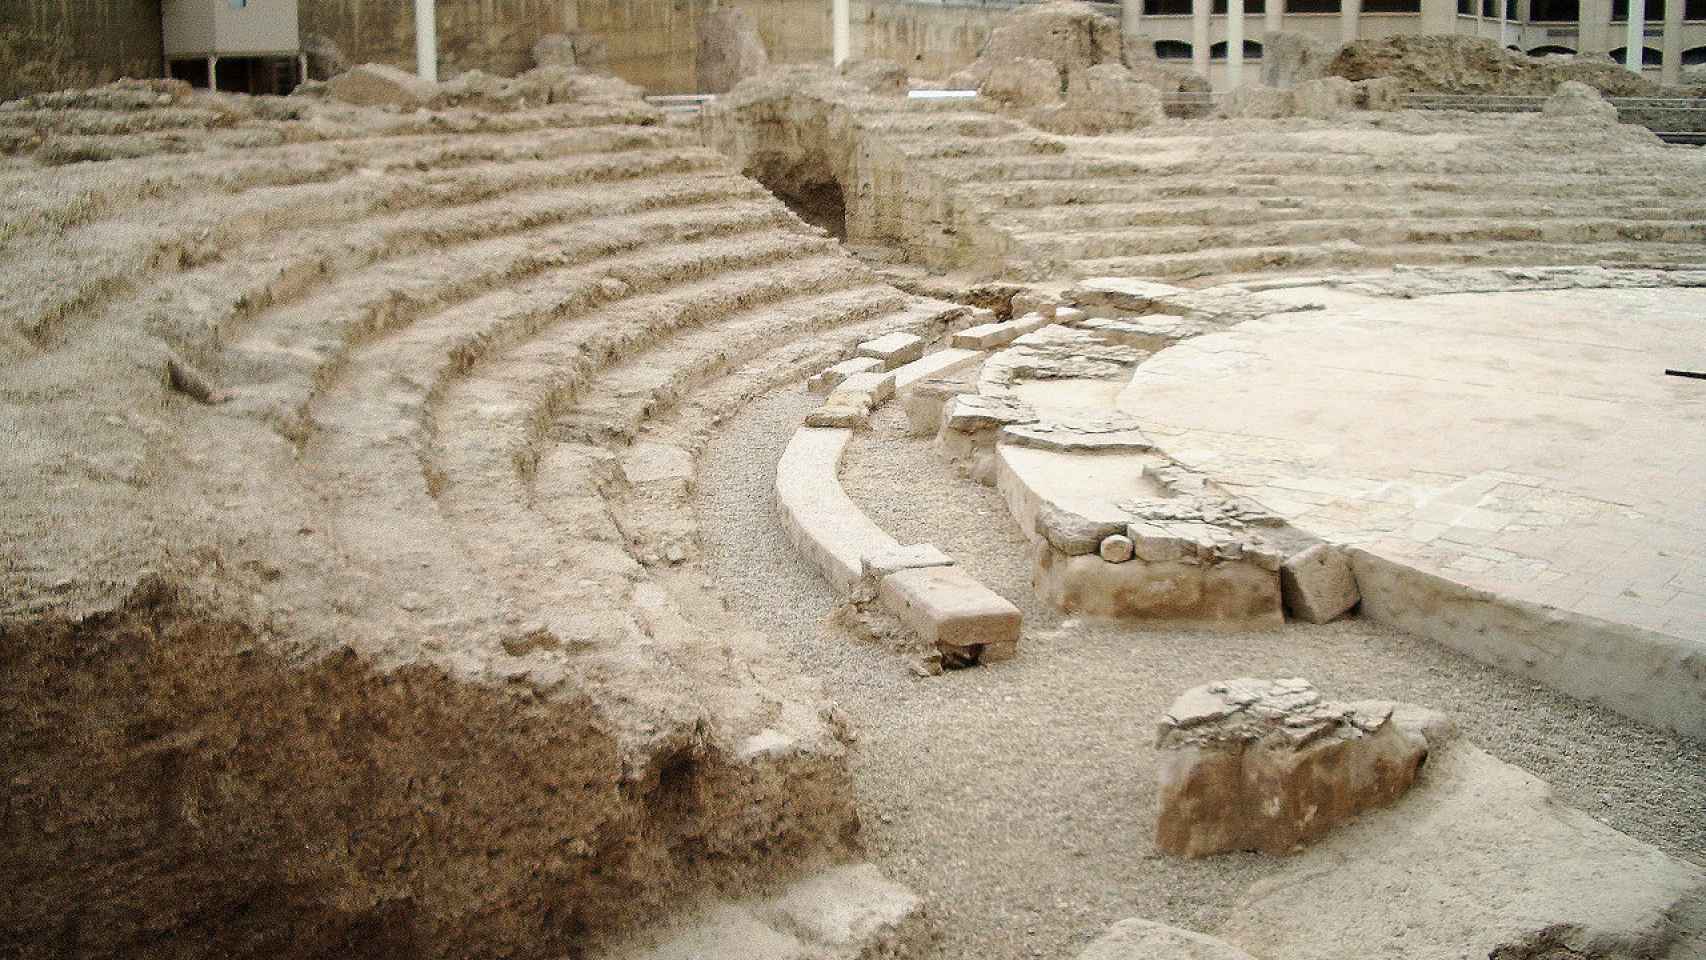 Teatro romano de Caesaraugusta